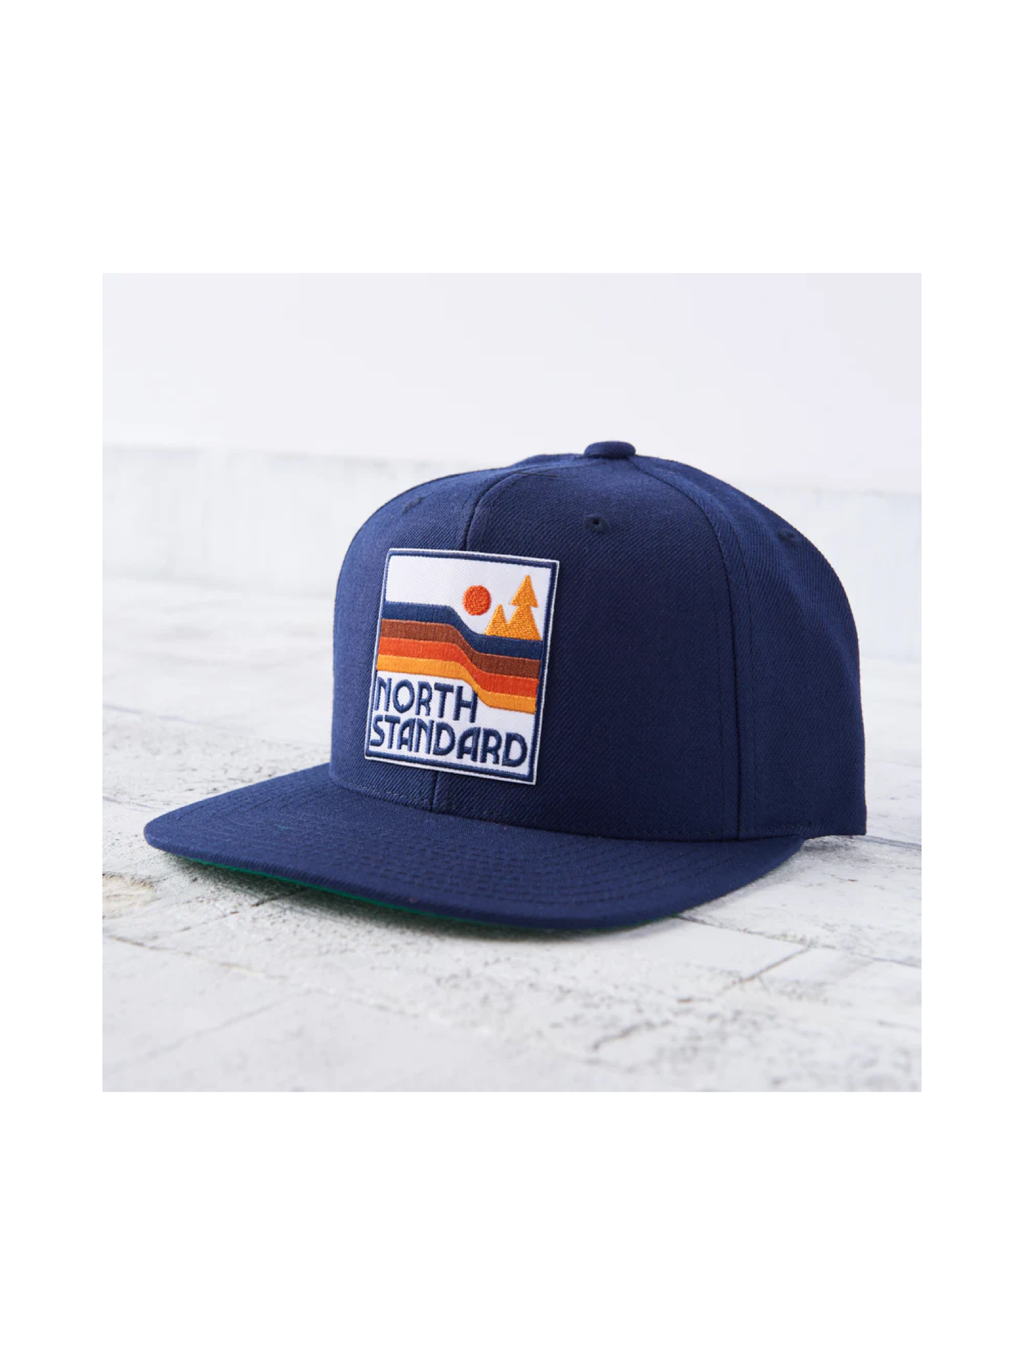 North Standard Navy/Waves Hat